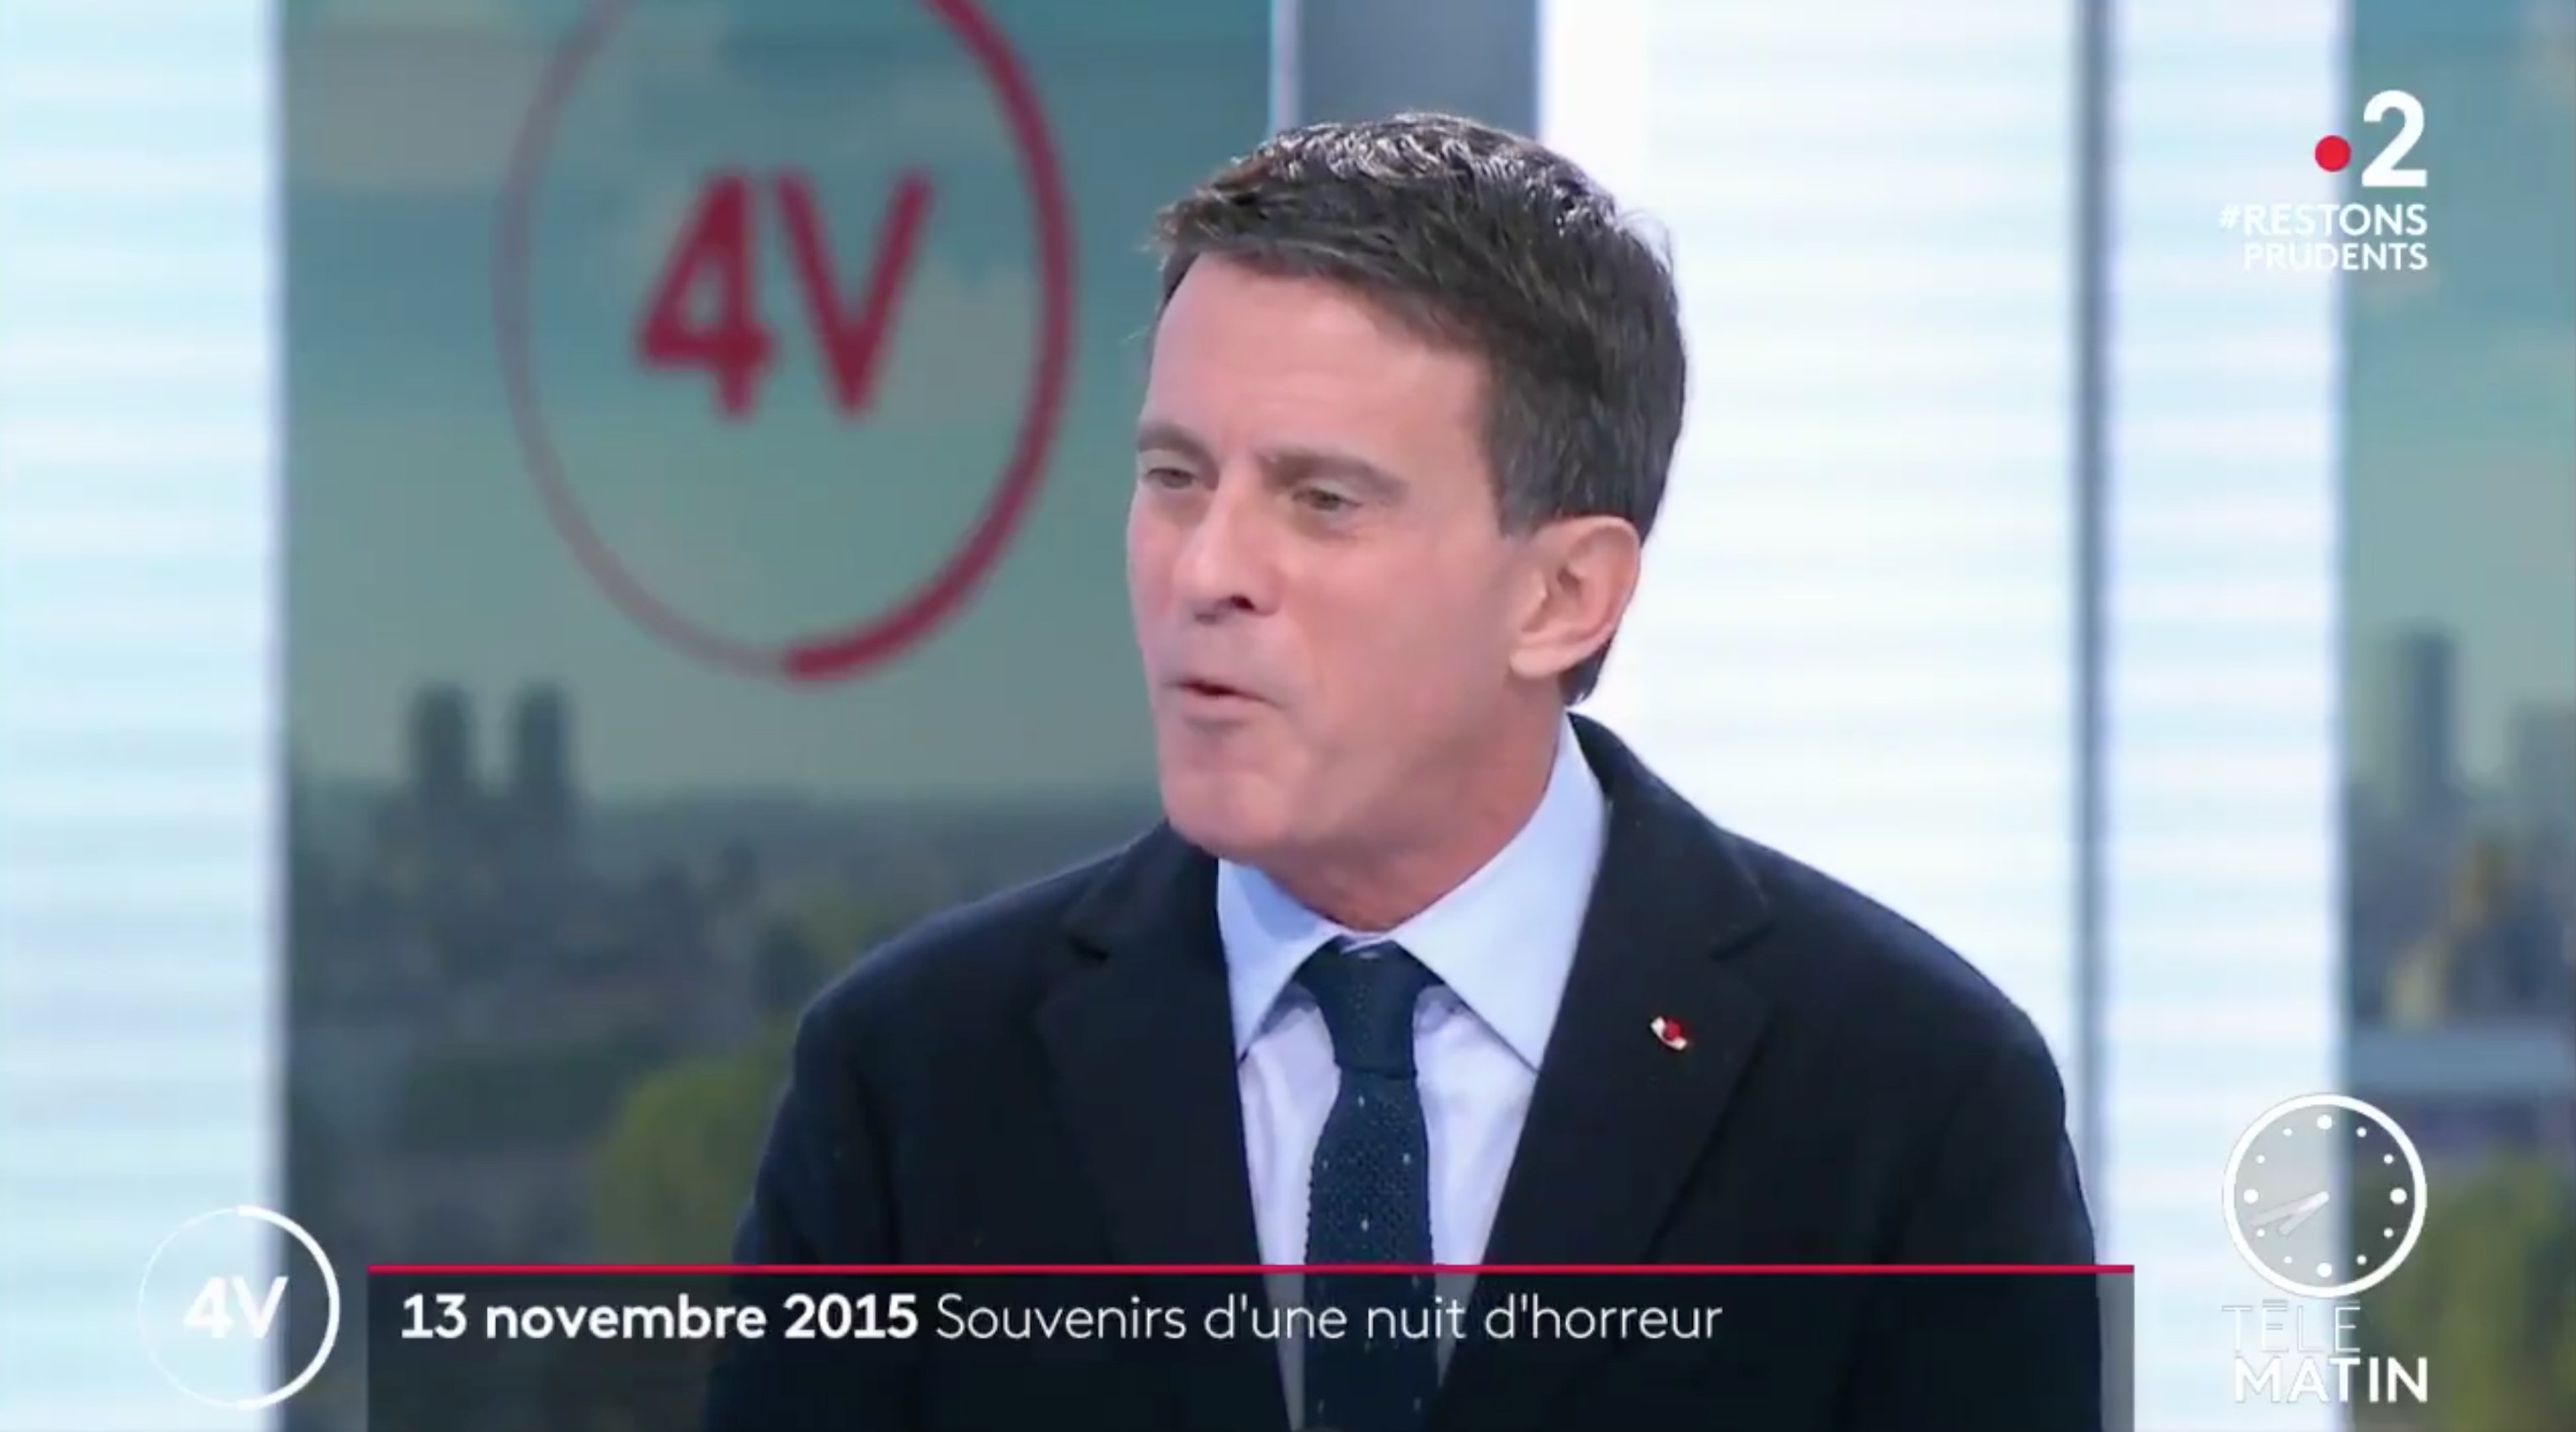 Valls hace las maletas para marcharse de BCN: piso en París, abandona el catalán